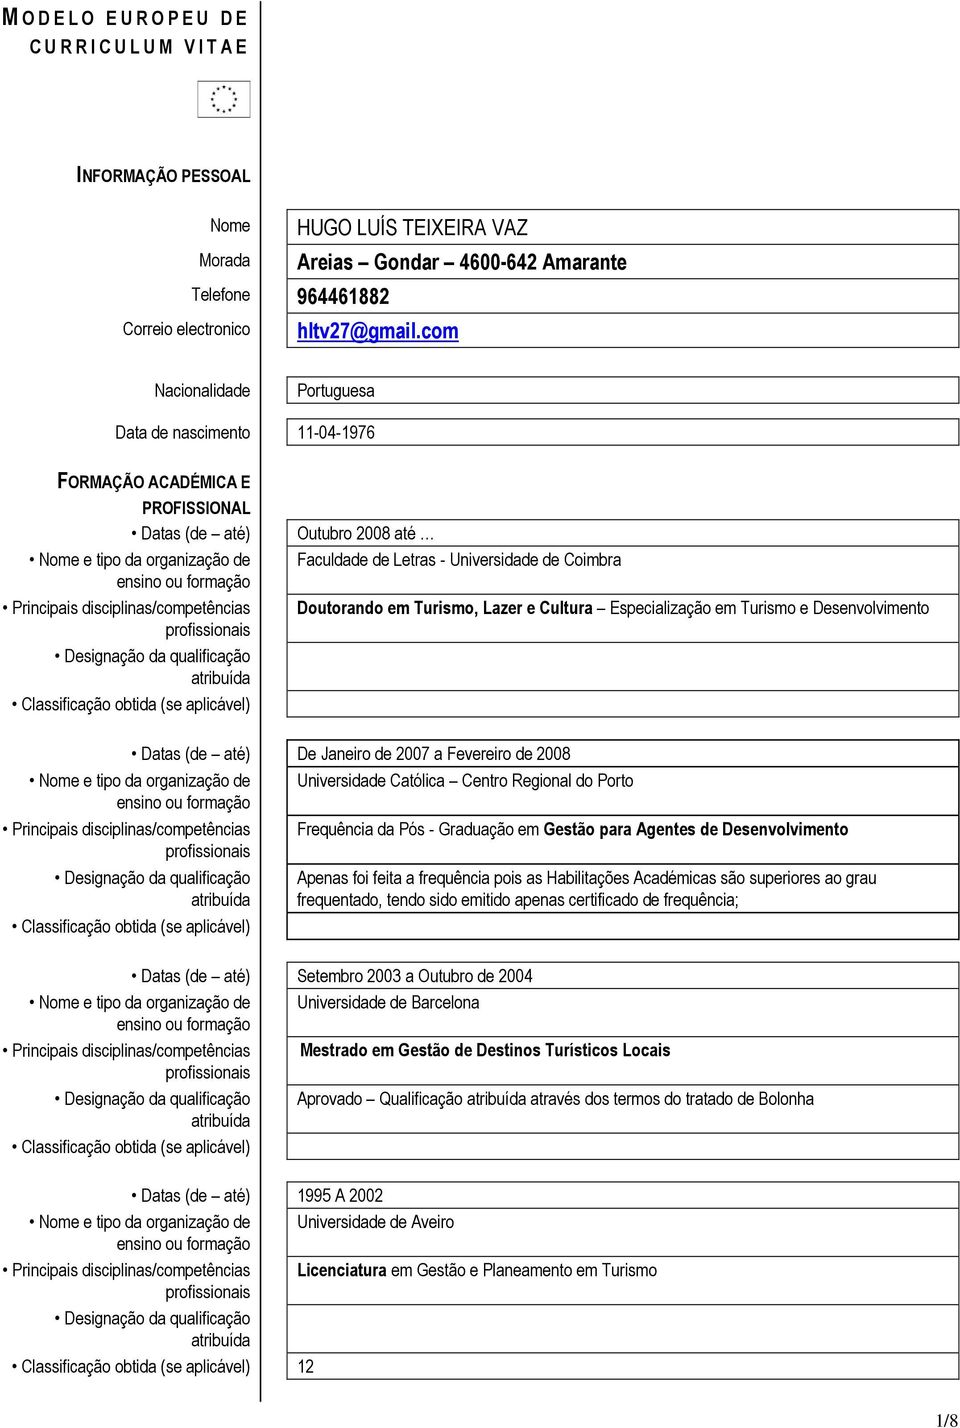 Coimbra Doutorando em Turismo, Lazer e Cultura Especialização em Turismo e Desenvolvimento Datas (de até) De Janeiro de 2007 a Fevereiro de 2008 Nome e tipo da organização de Universidade Católica